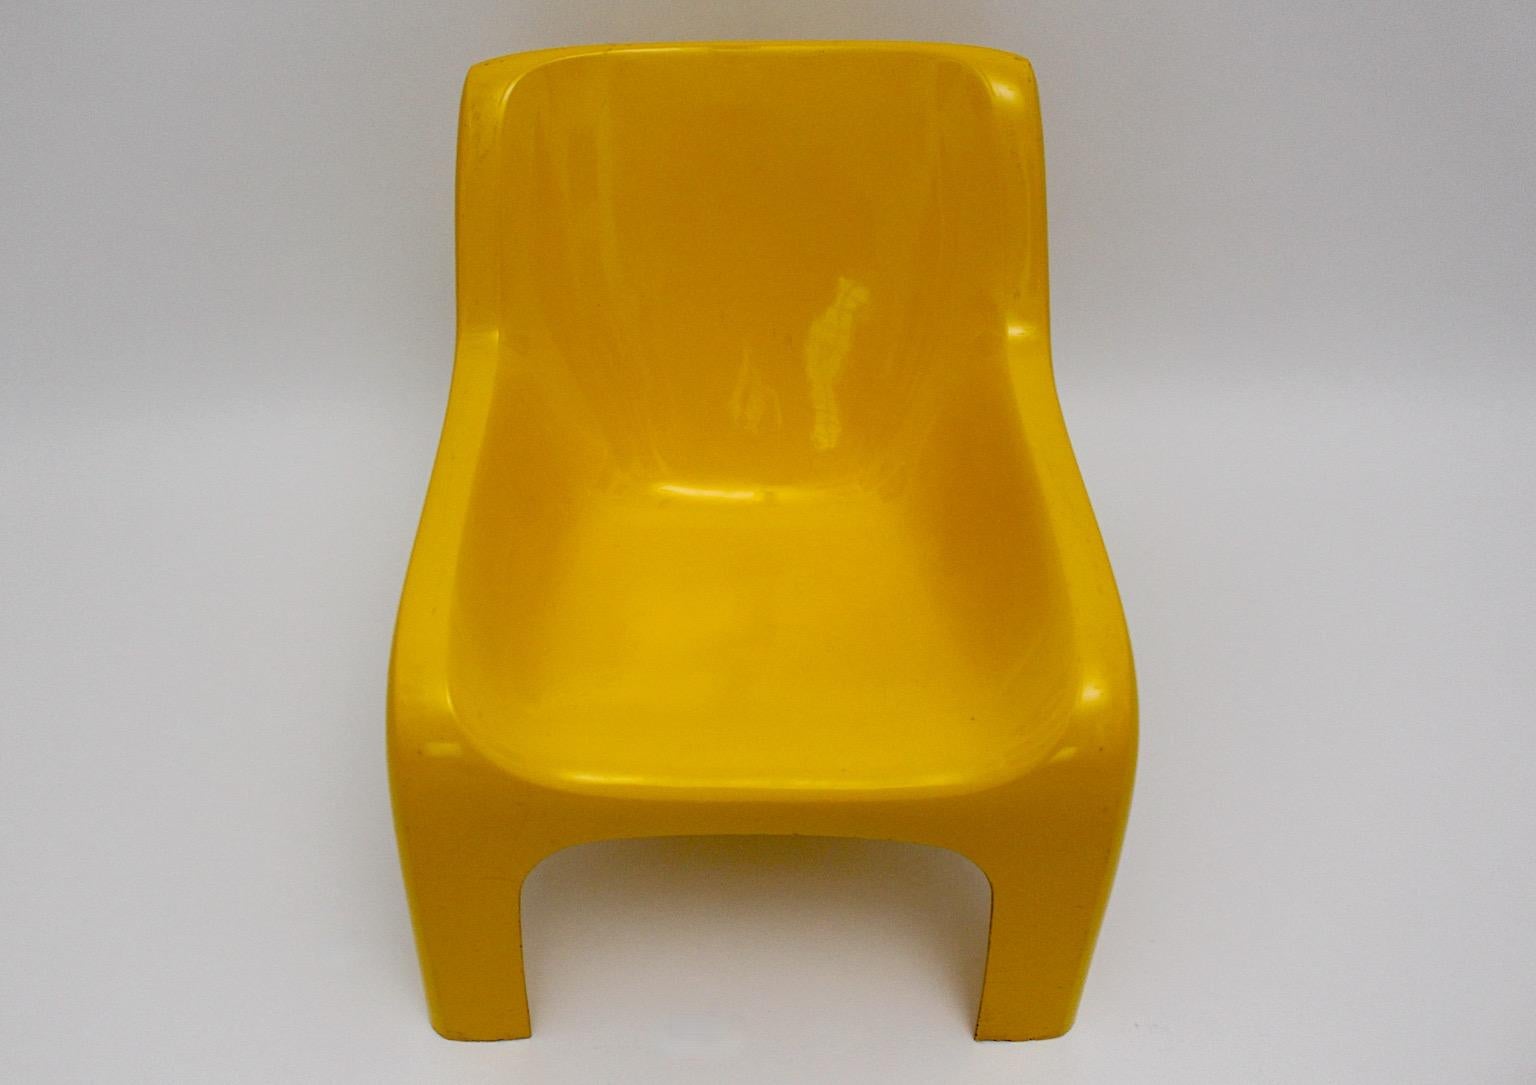 Space Age vintage lounge chair Modell Anatomia aus Kunststoff in gelber Farbe von Ahti Kotikoski 1968s für Asko Finnland.
Ein toller Loungesessel aus Kunststoff in einem sonnigen gelben Farbton von Ahti Kotikoski für Asko 1968,